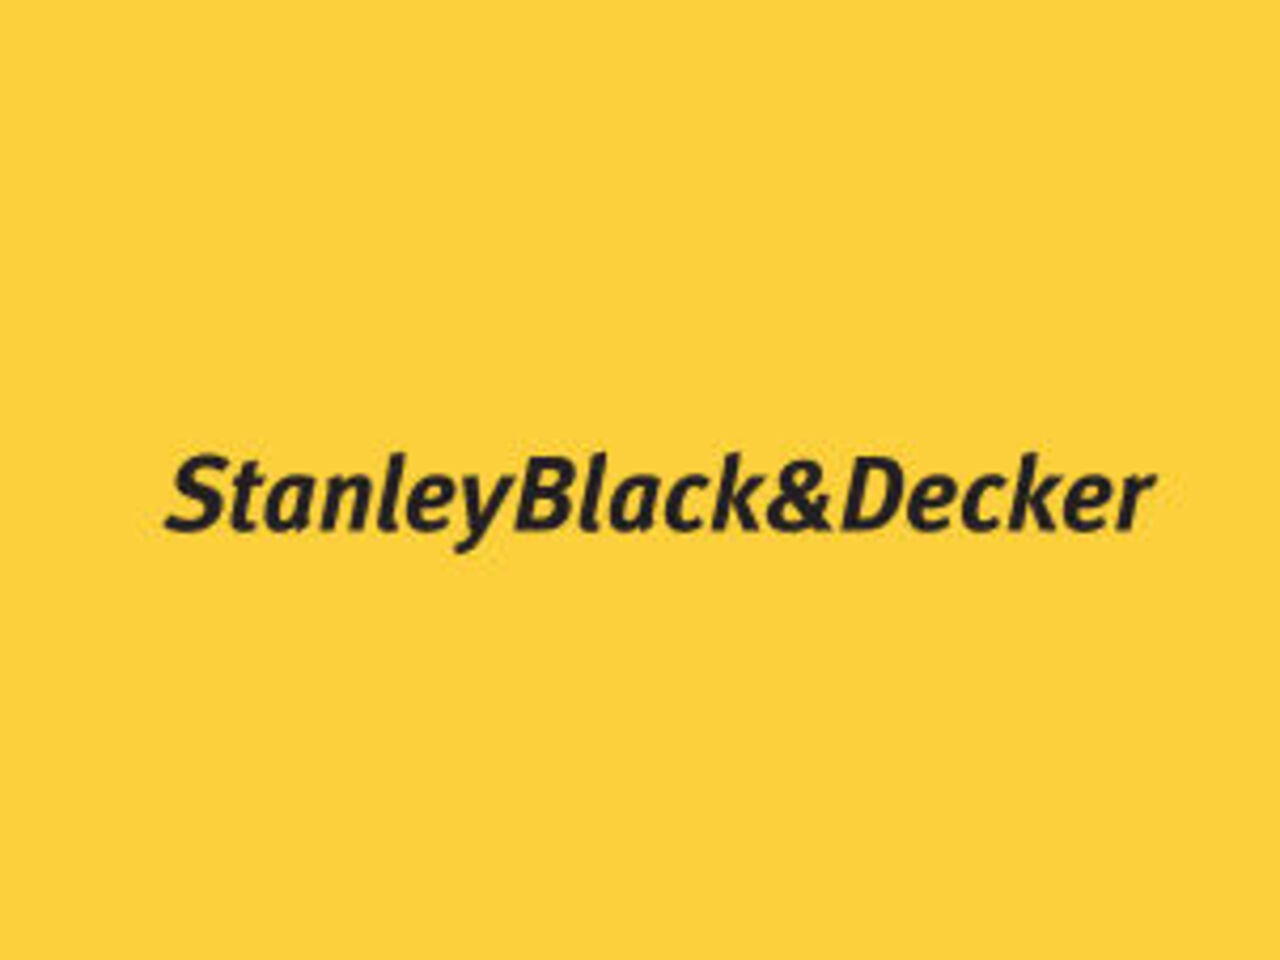 Worldskills International欢迎Stanley Black＆Decker